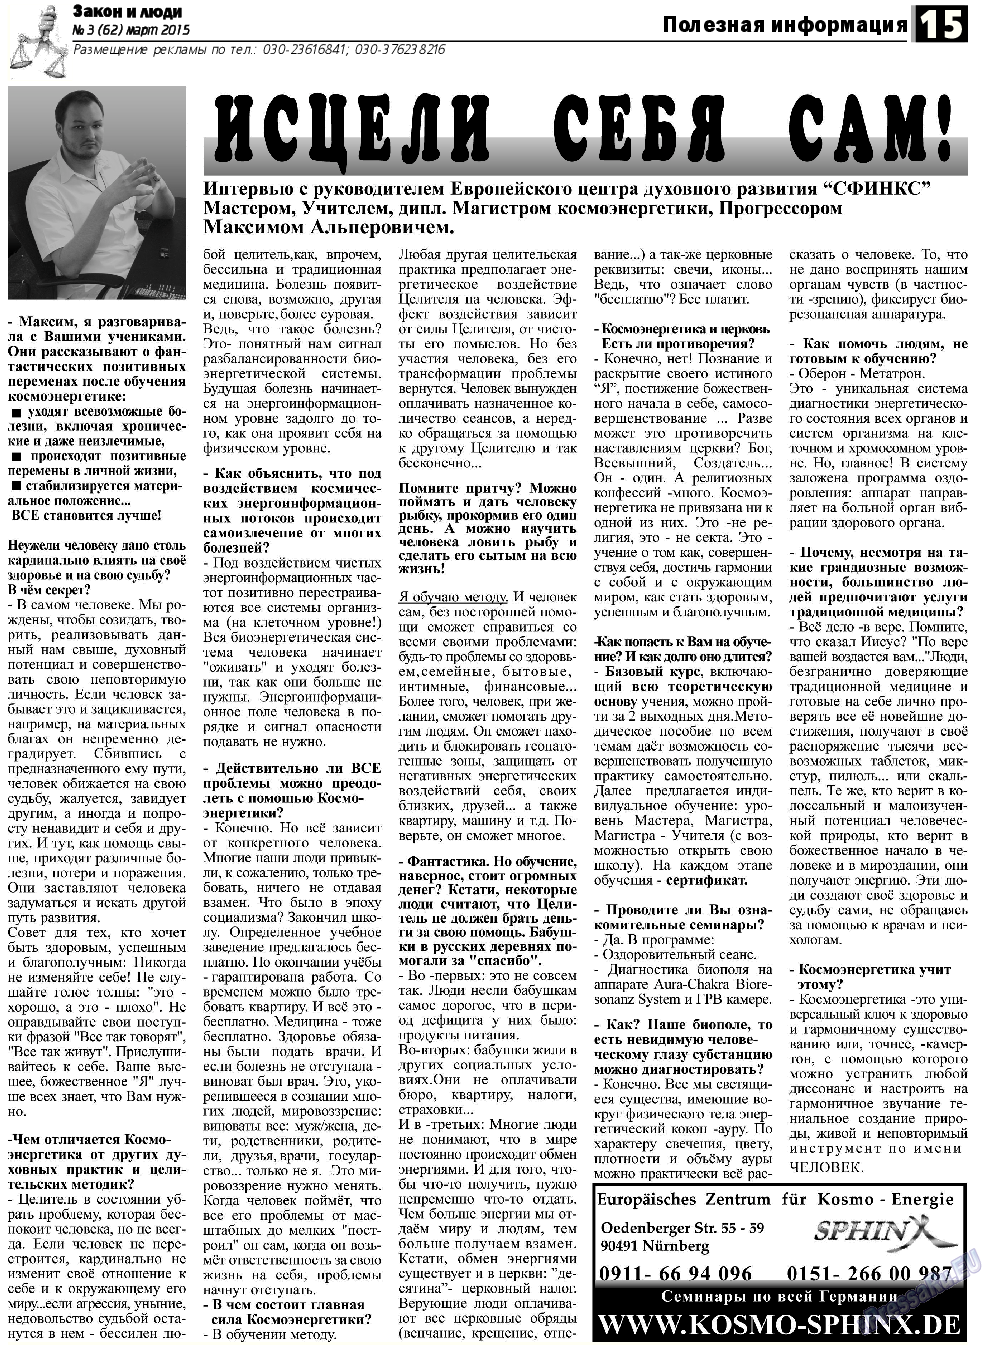 Закон и люди, газета. 2015 №3 стр.15